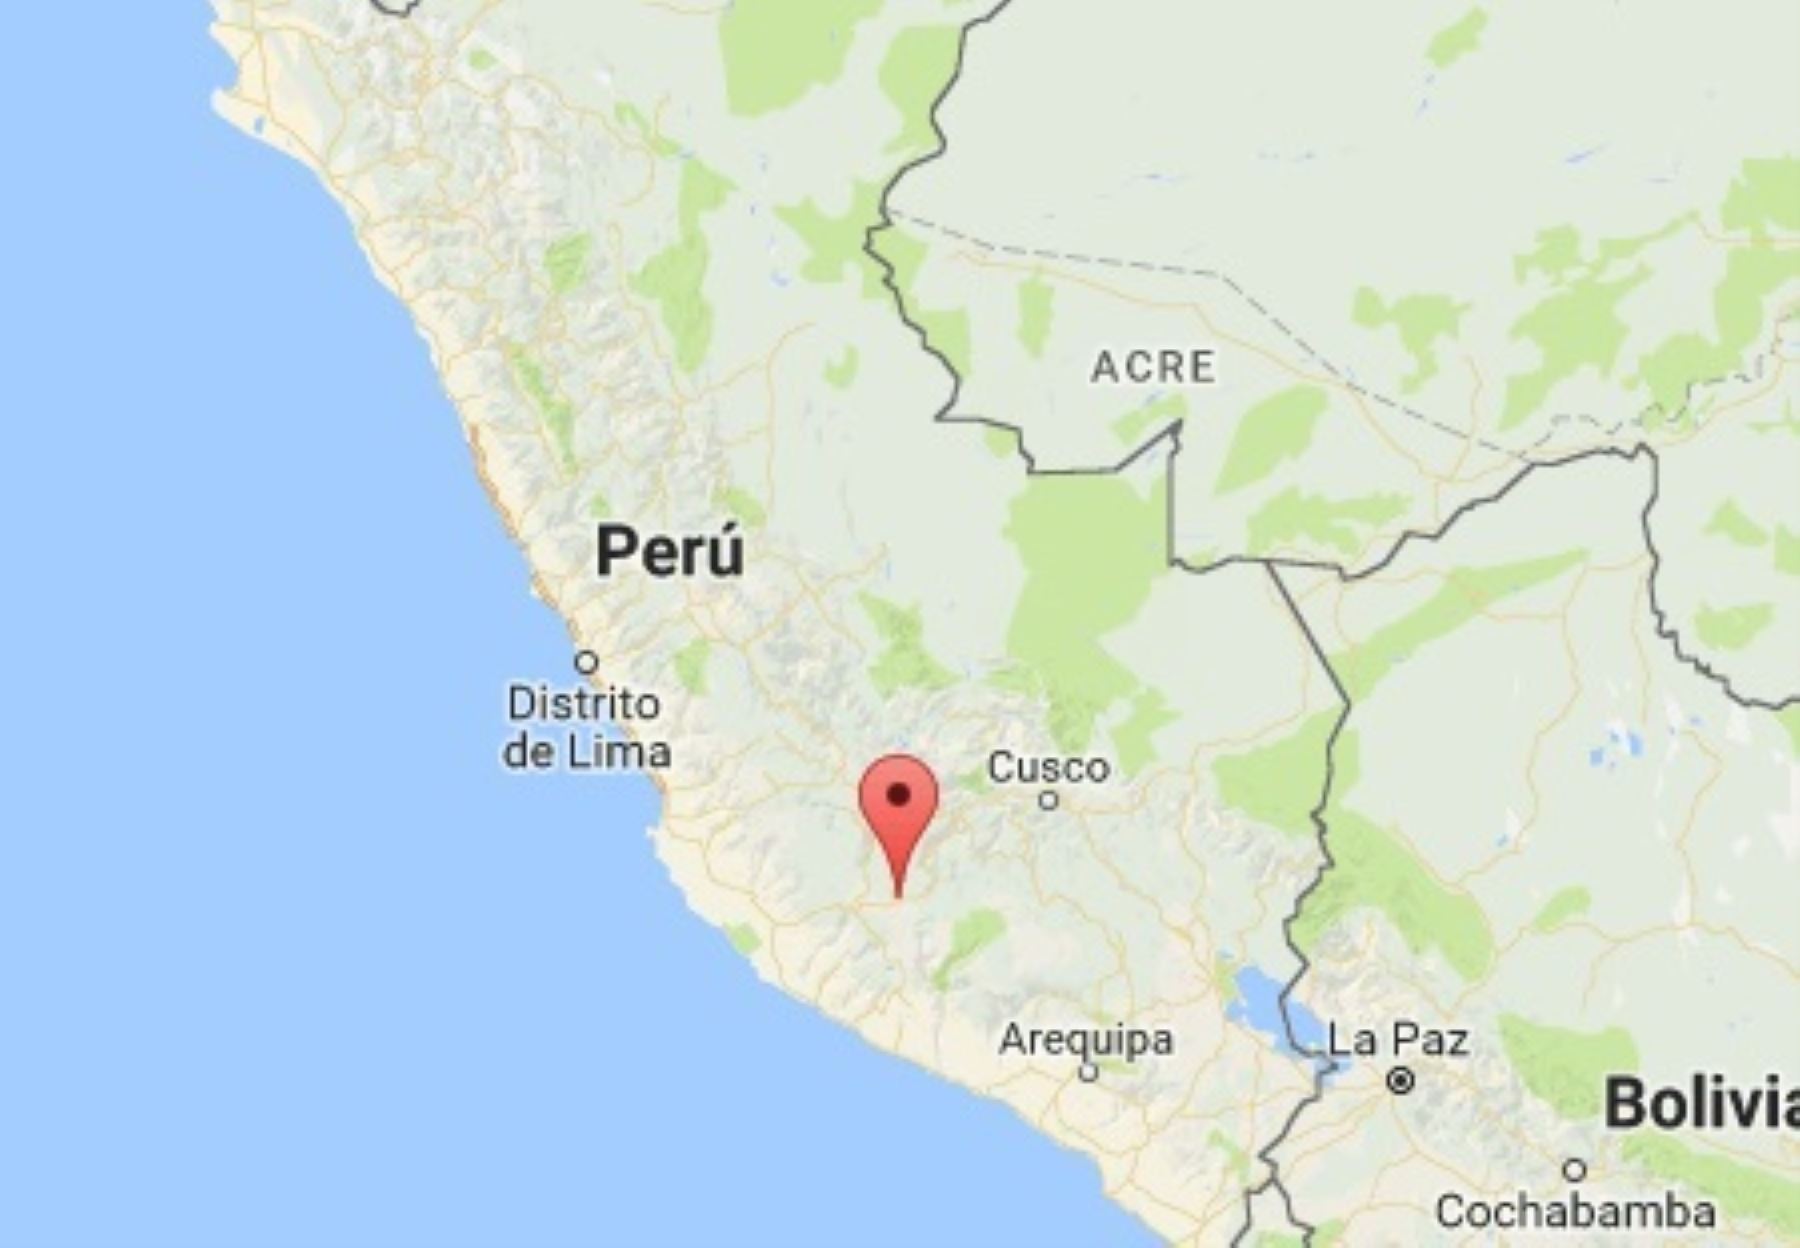 Un sismo de magnitud 4.4 se registró esta mañana a 12 kilómetros al noreste de la provincia de Antabamba, en el departamento de Apurímac, informó el Centro Sismológico Nacional del Instituto Geofísico del Perú. ANDINA/Difusión